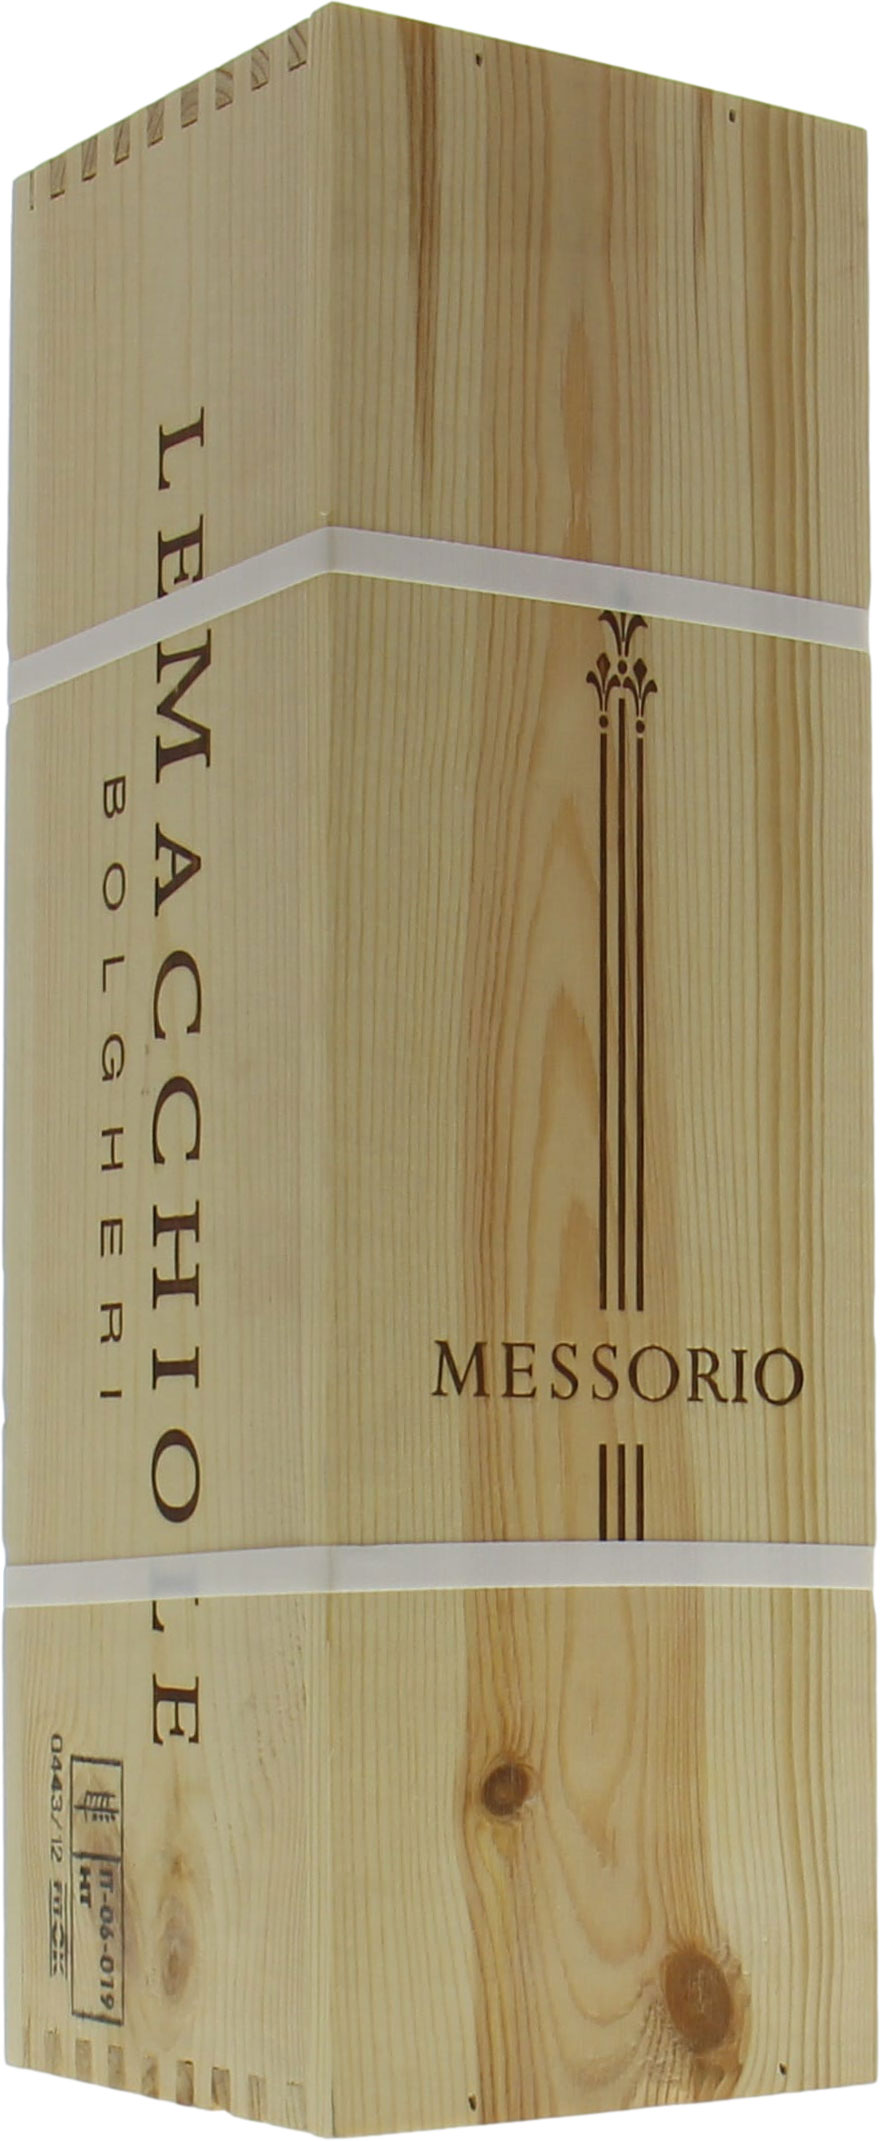 Le Macchiole - Messorio 2012 Perfect